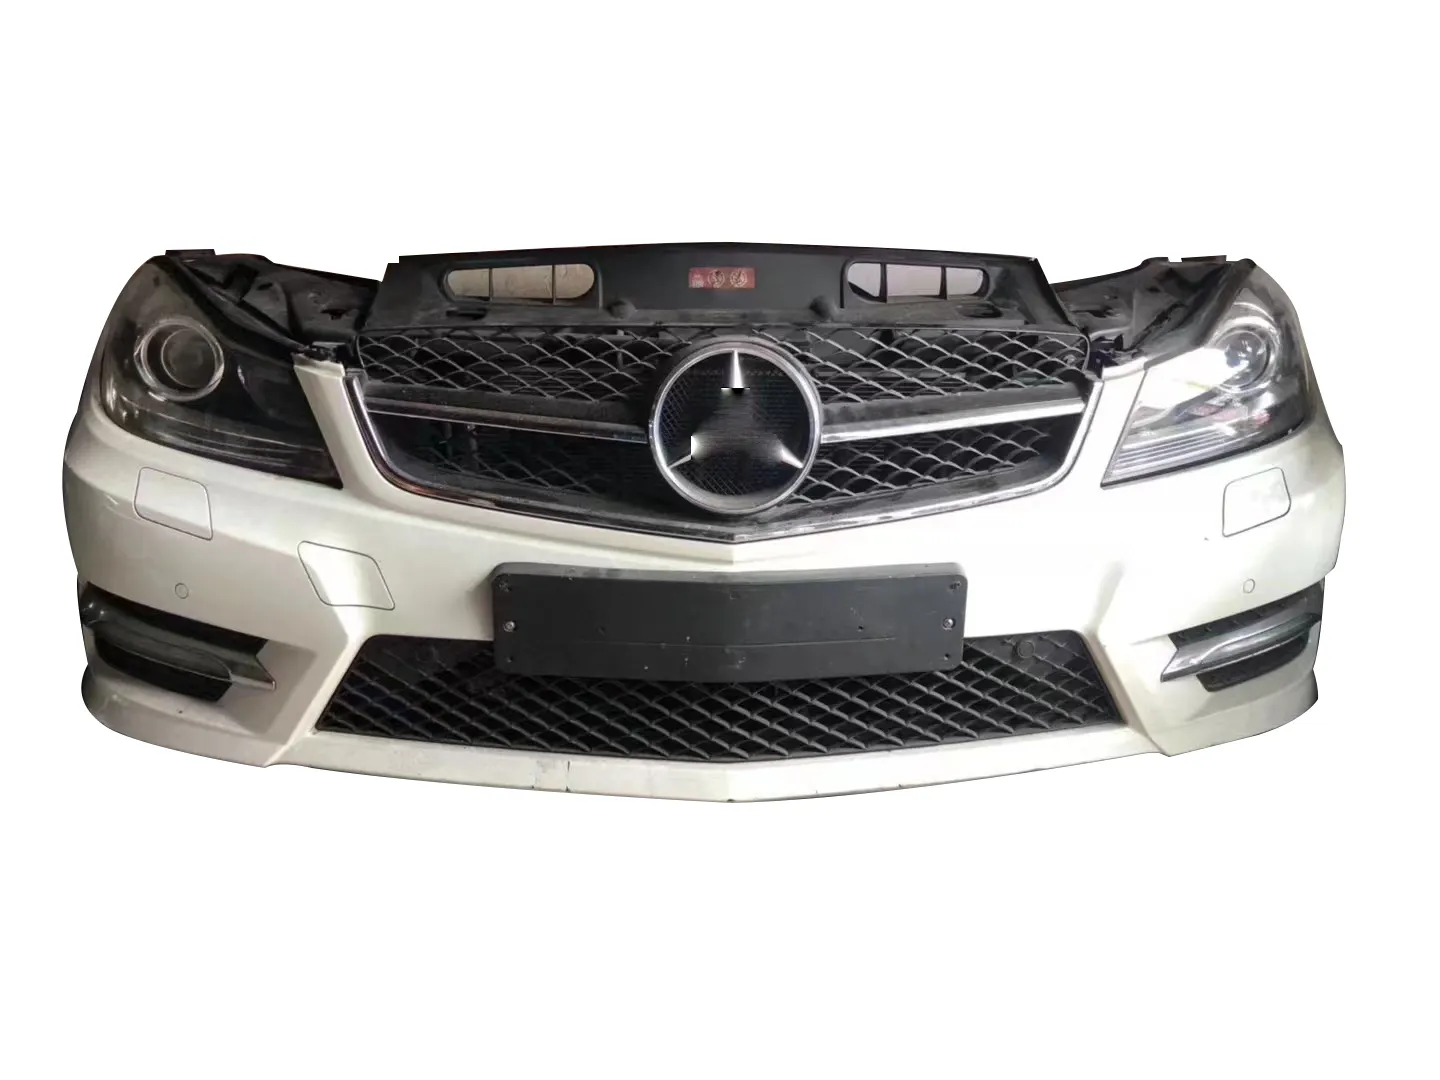 Motorhauben abdeckung aus Metall für Motorhaube für Mercedes Benz C Klasse W204 C200 C300 C63 Karosserie-Kits